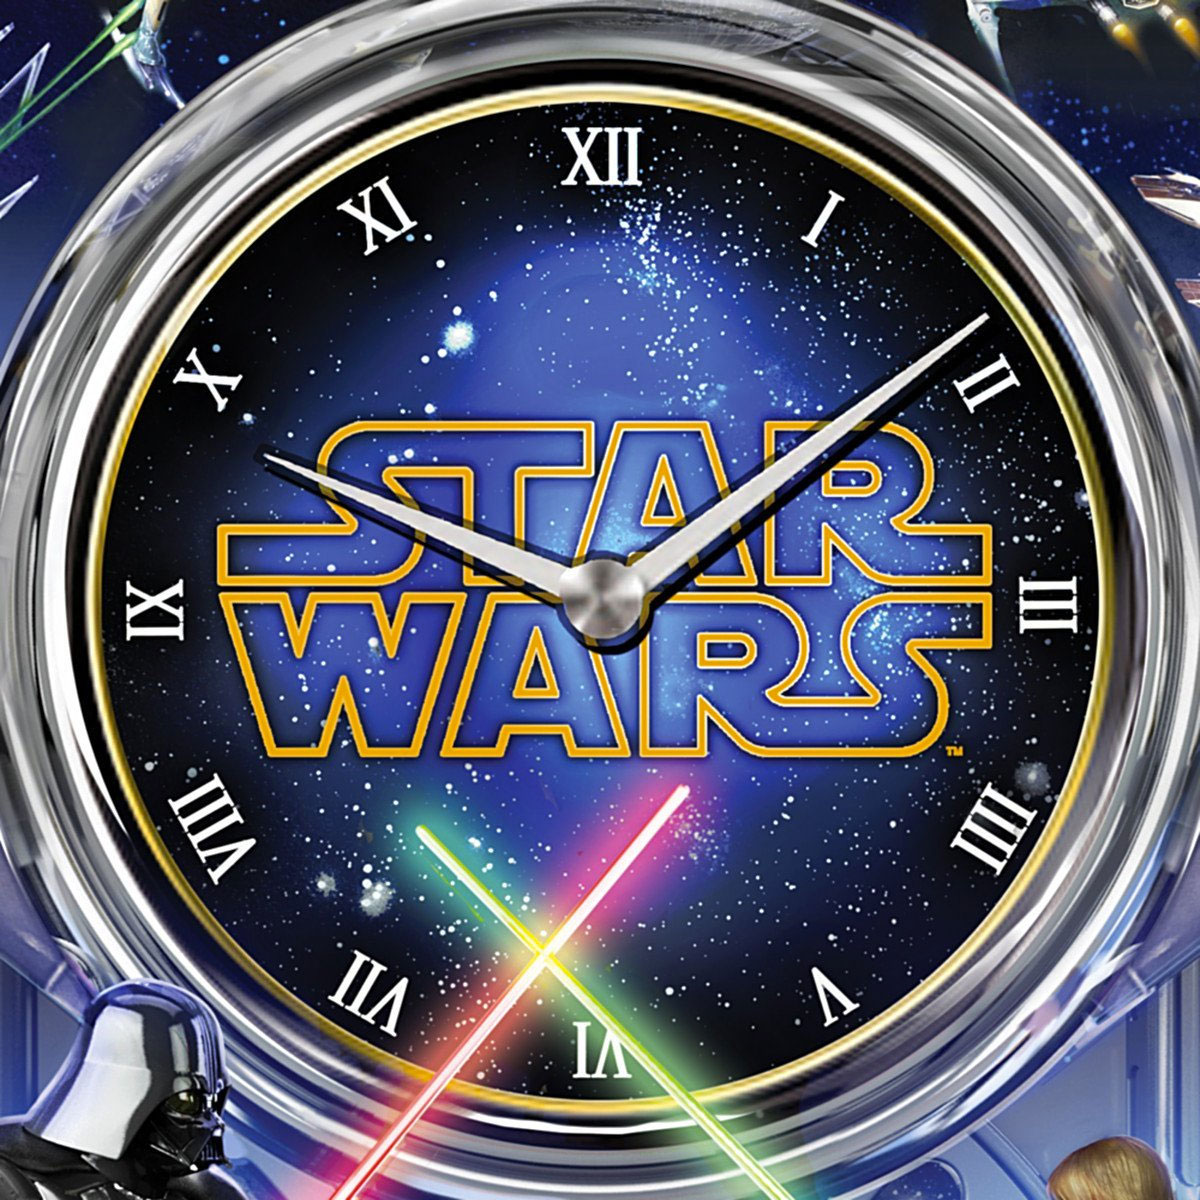 Star Wars Return of the Jedi Wall Clock Face